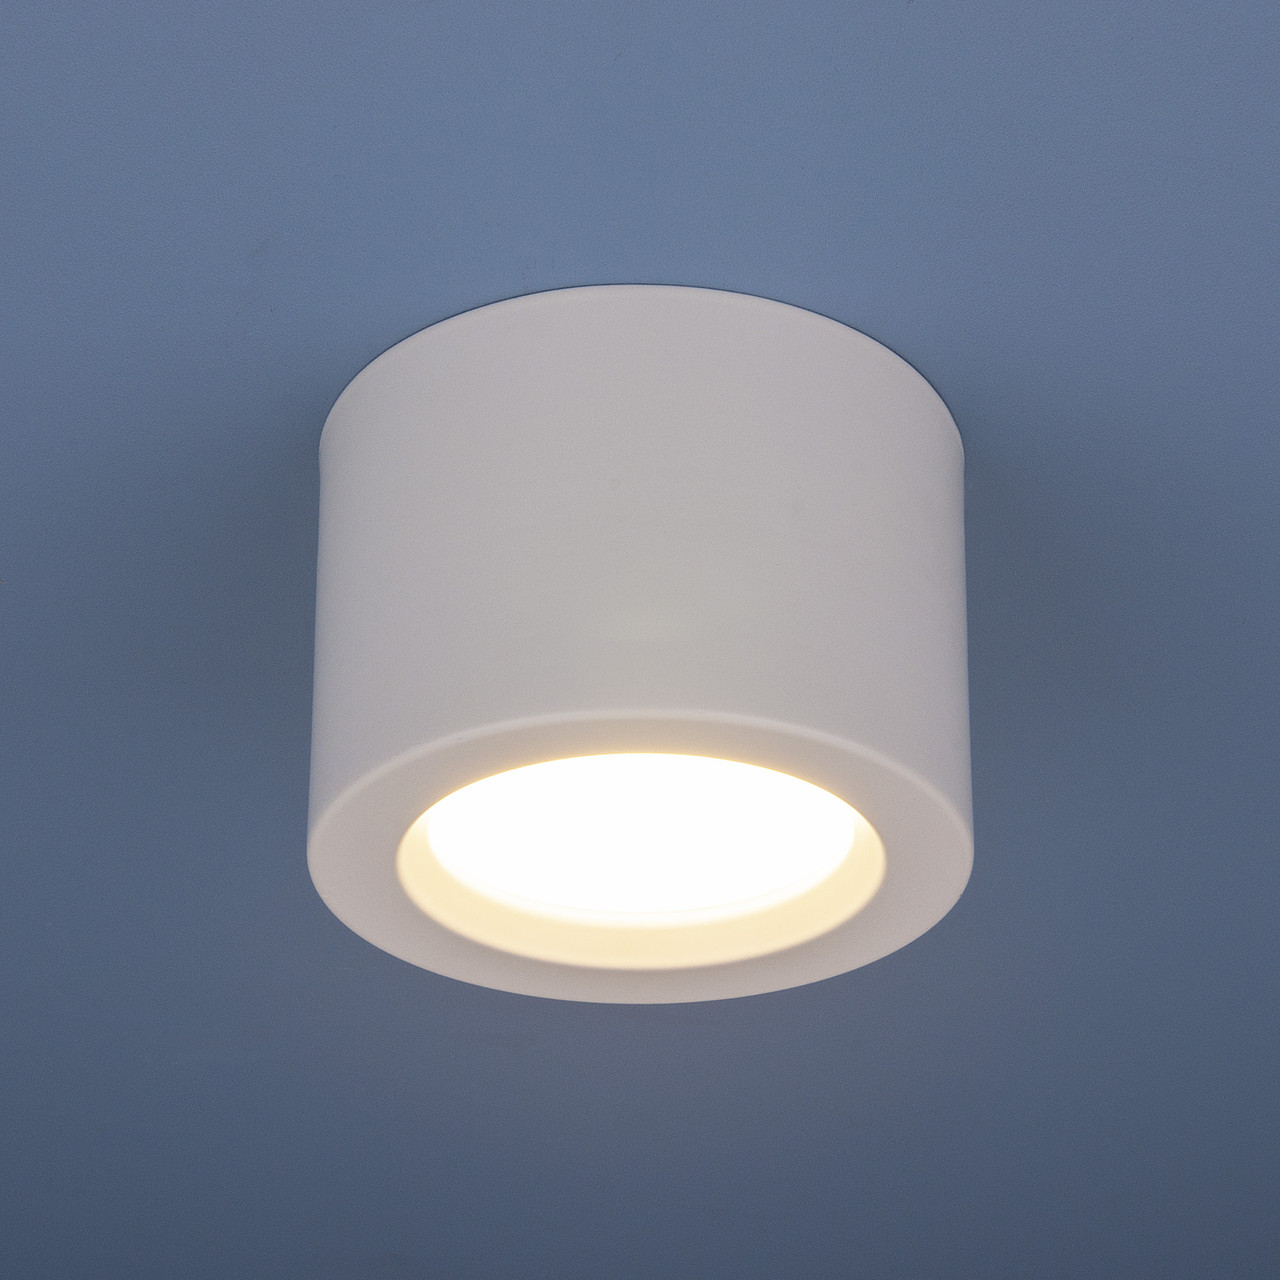 Накладной потолочный LED светильник DLR026 6W 4200K белый